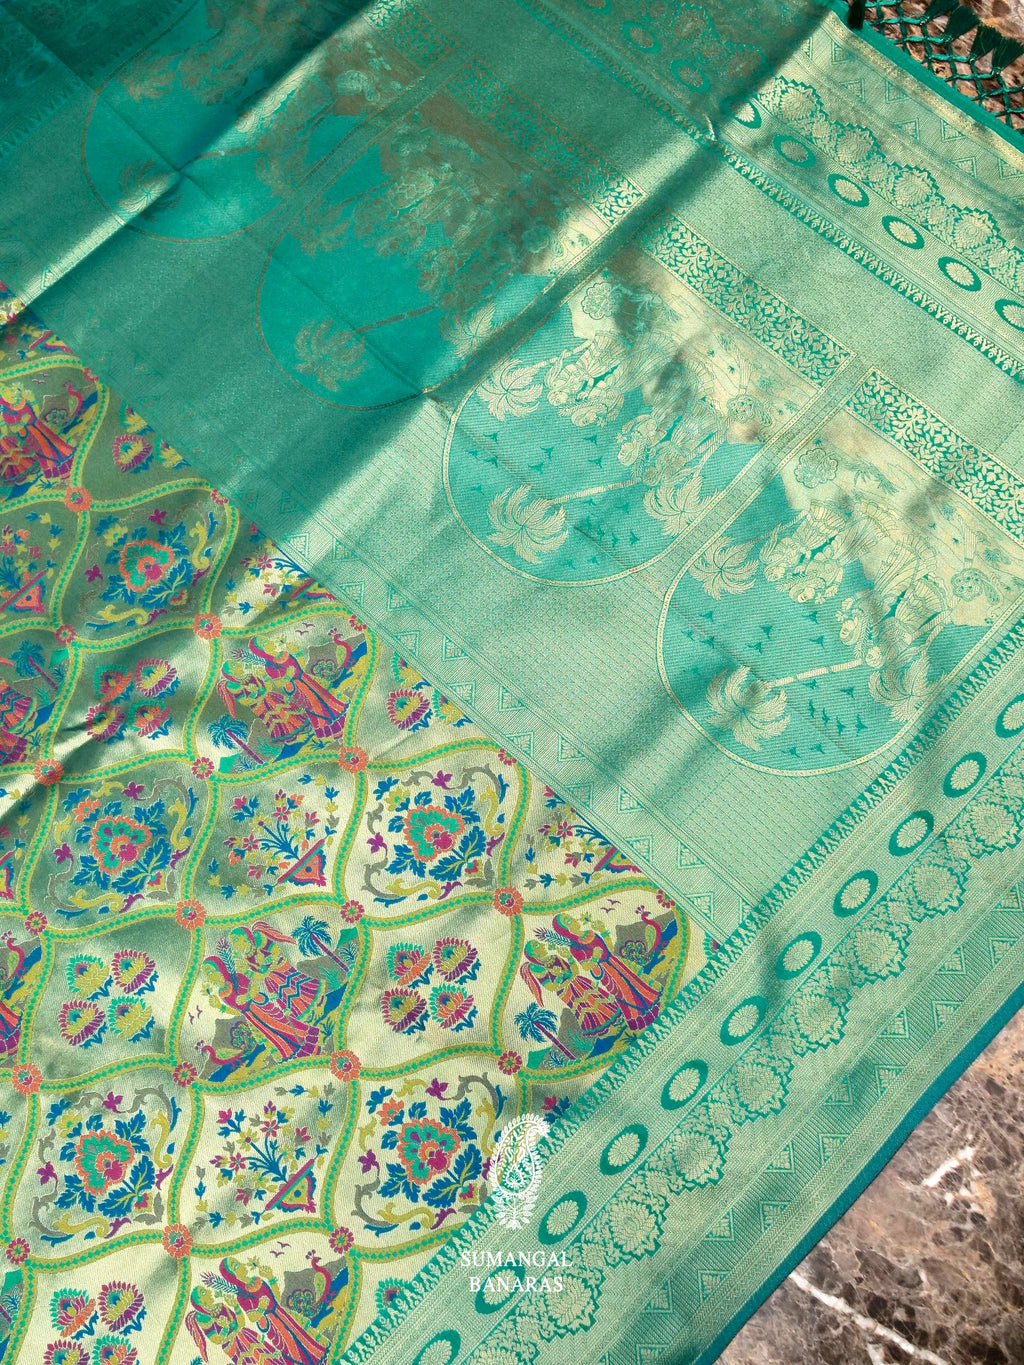 Banarasi Teal Green Blended Moonga Silk Saree